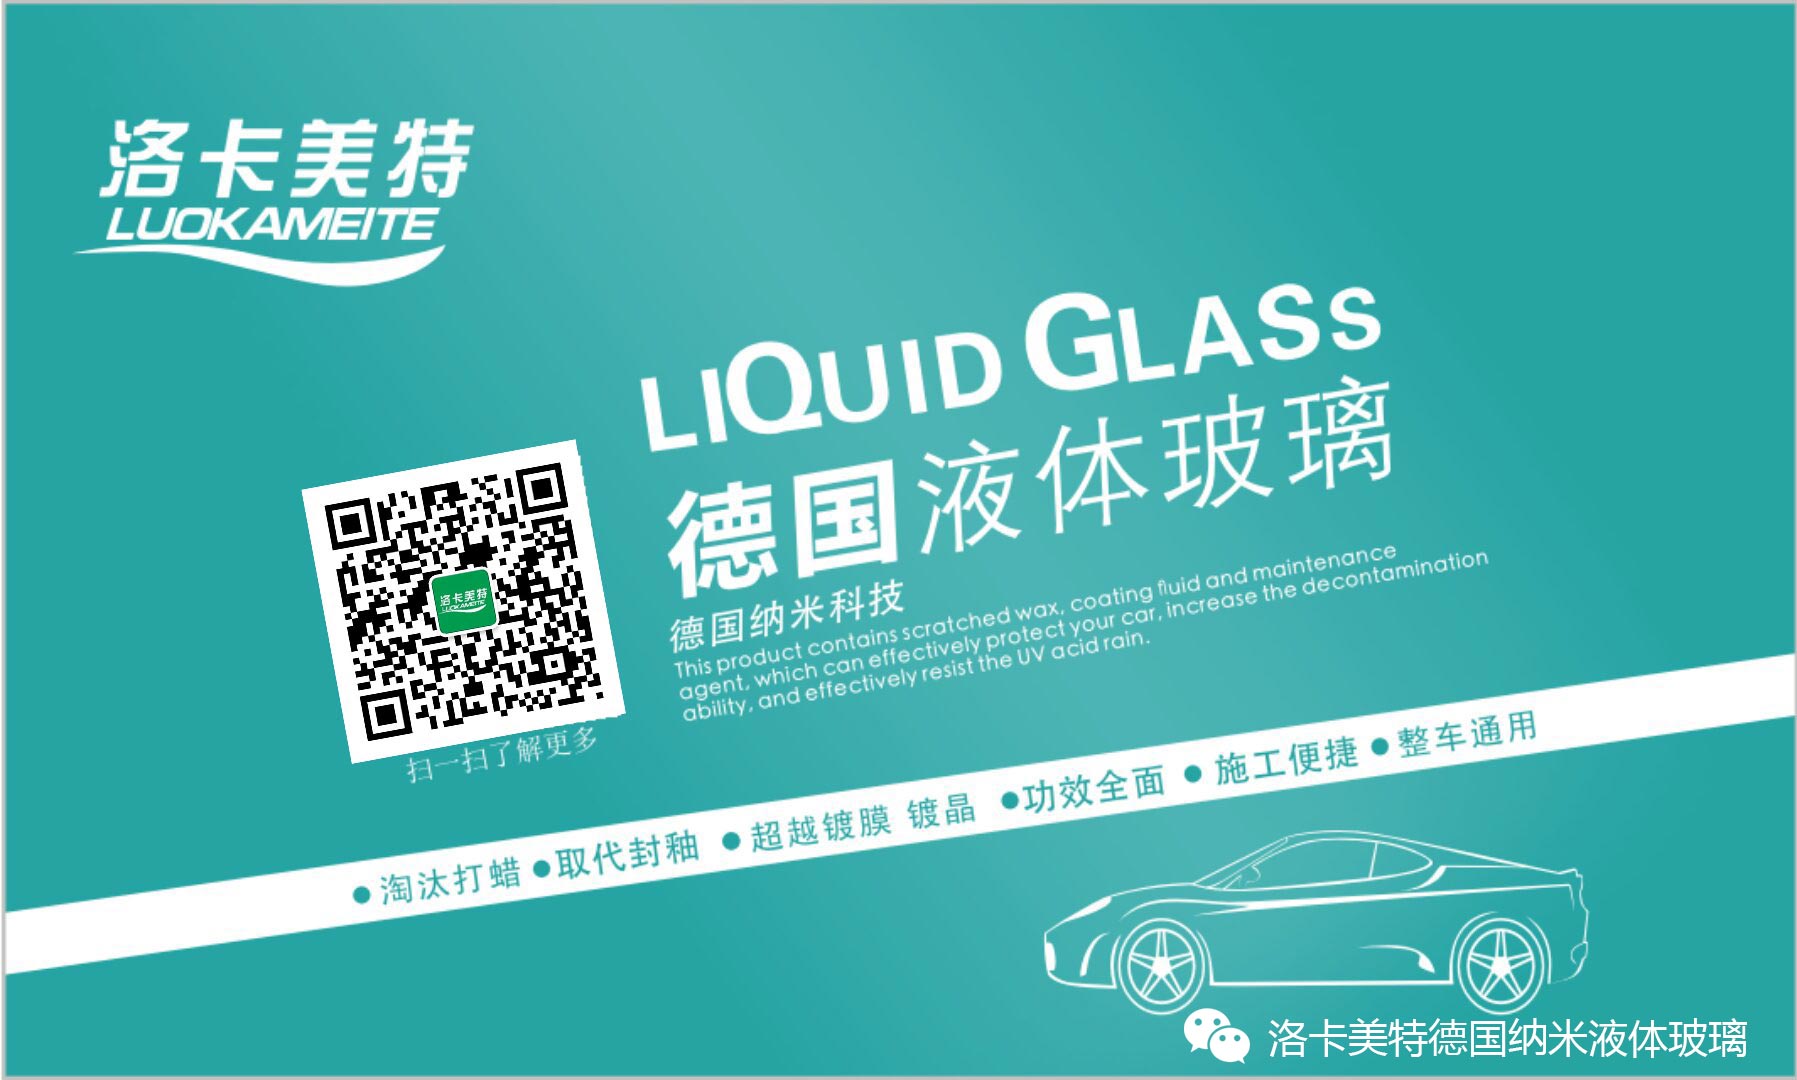 洛卡美特（LUOKAMEITE）液体玻璃——东莞市天诺新材料科技有限公司推出的高科技汽车美容护理产品；该产品将 ...